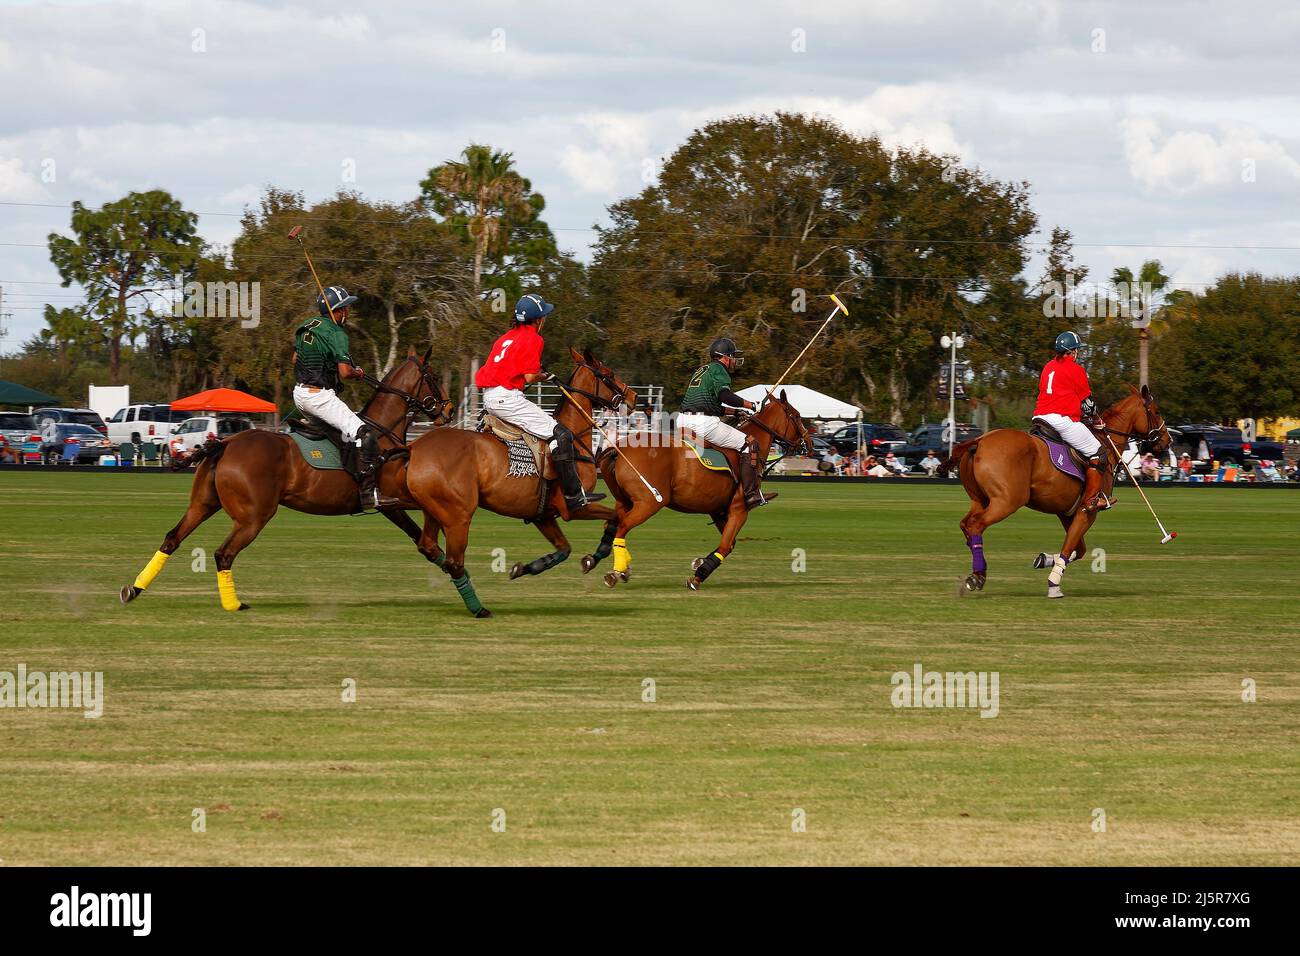 Polo-Spiel; schnelllebig; Spiel; Pferde laufen auf dem Spielfeld; 4 Spieler, Menschen; Sport; Bewegung, Zuschauer, grünes Gras, wolkigen Himmel, Wettbewerb, Florida; See Stockfoto